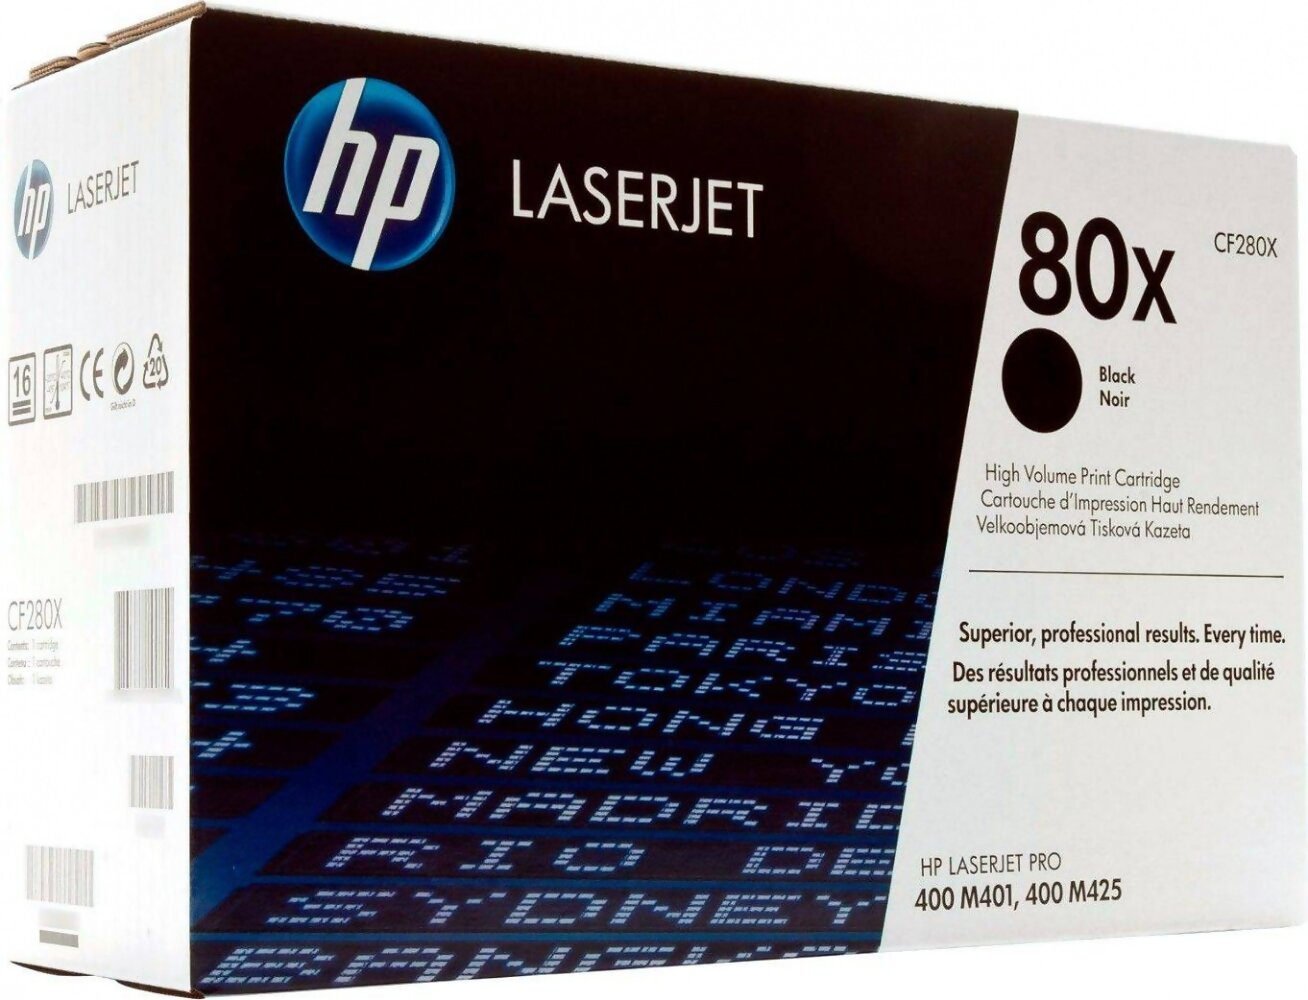 Картридж HP CF280X 80X оригинальный чёрный для принтеров Laserjet Pro 400 M401 | Laserjet Pro 400 M425